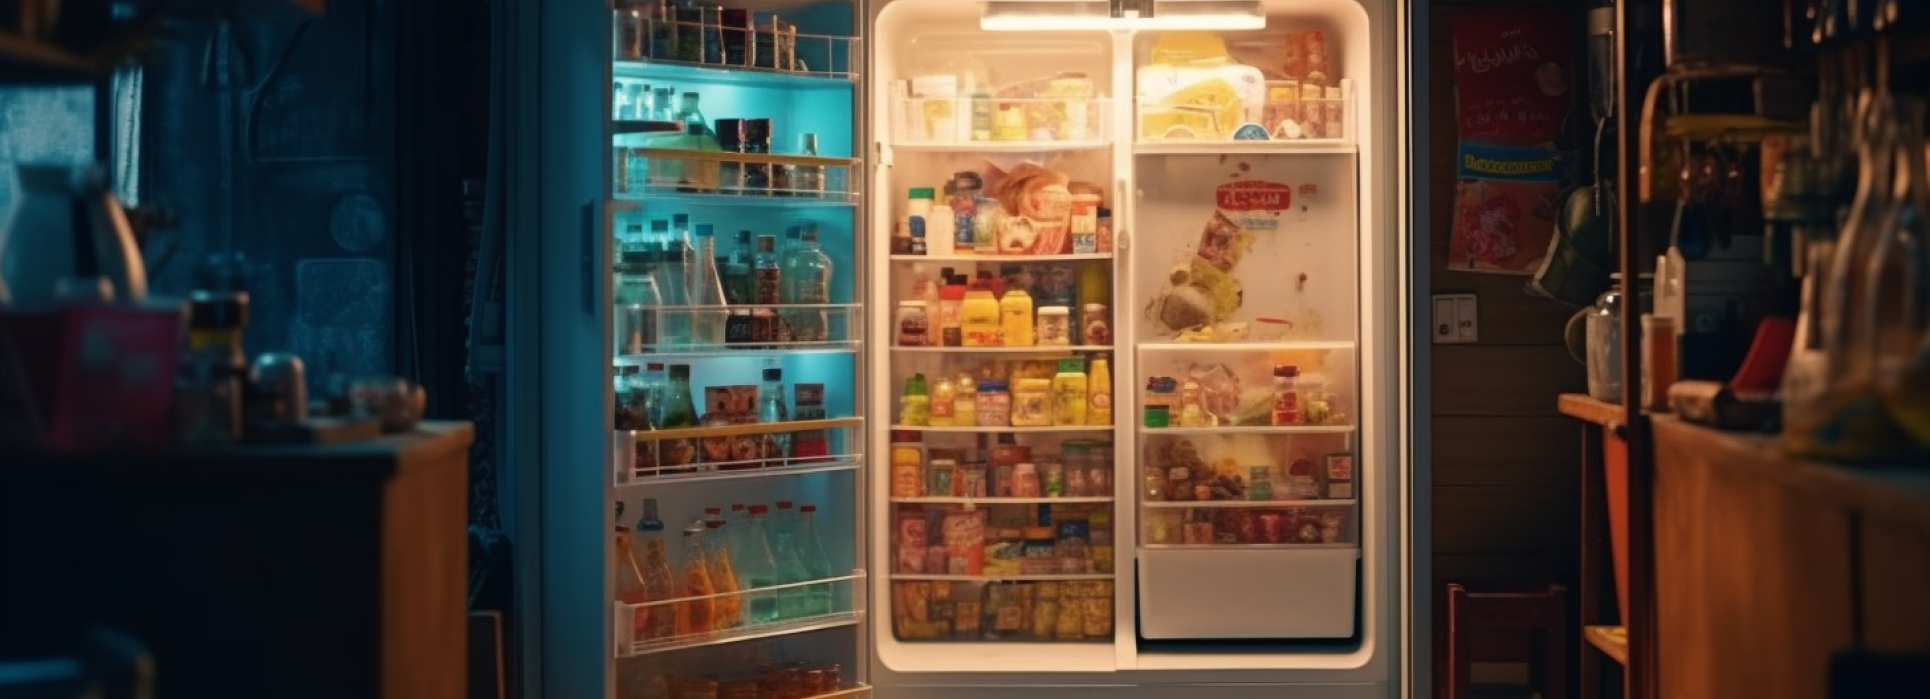 Freezer efficiente dal punto di vista energetico e intelligente per la prossima estate